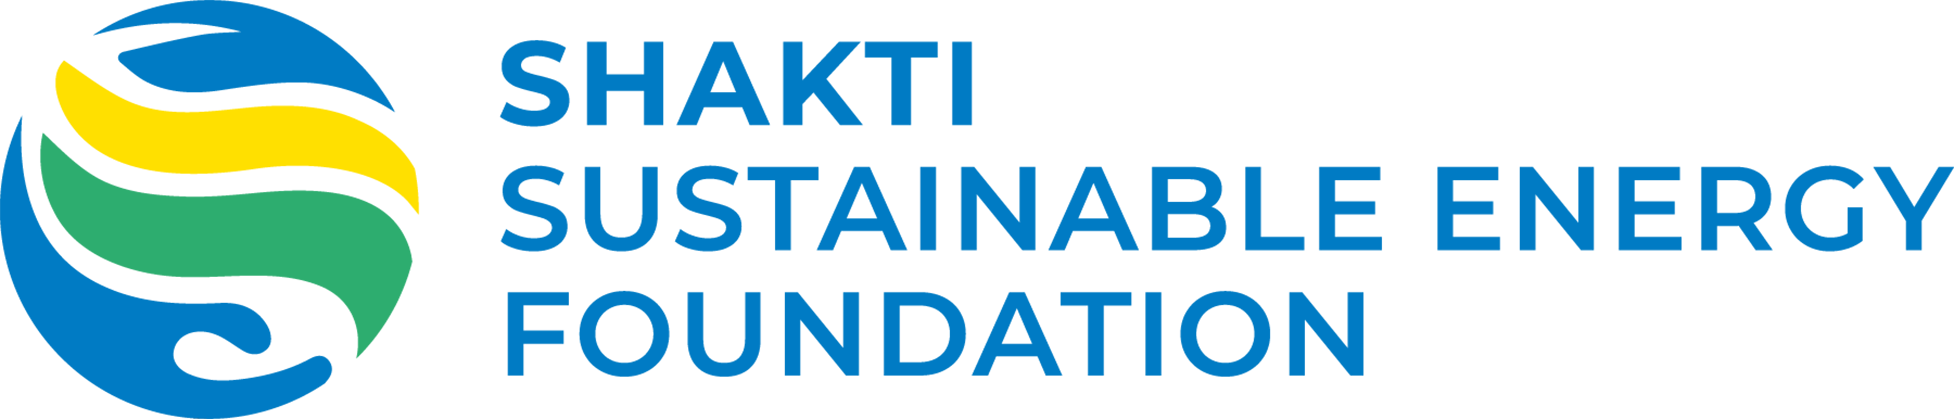 Shakti Sustainable Energy Foundation logo